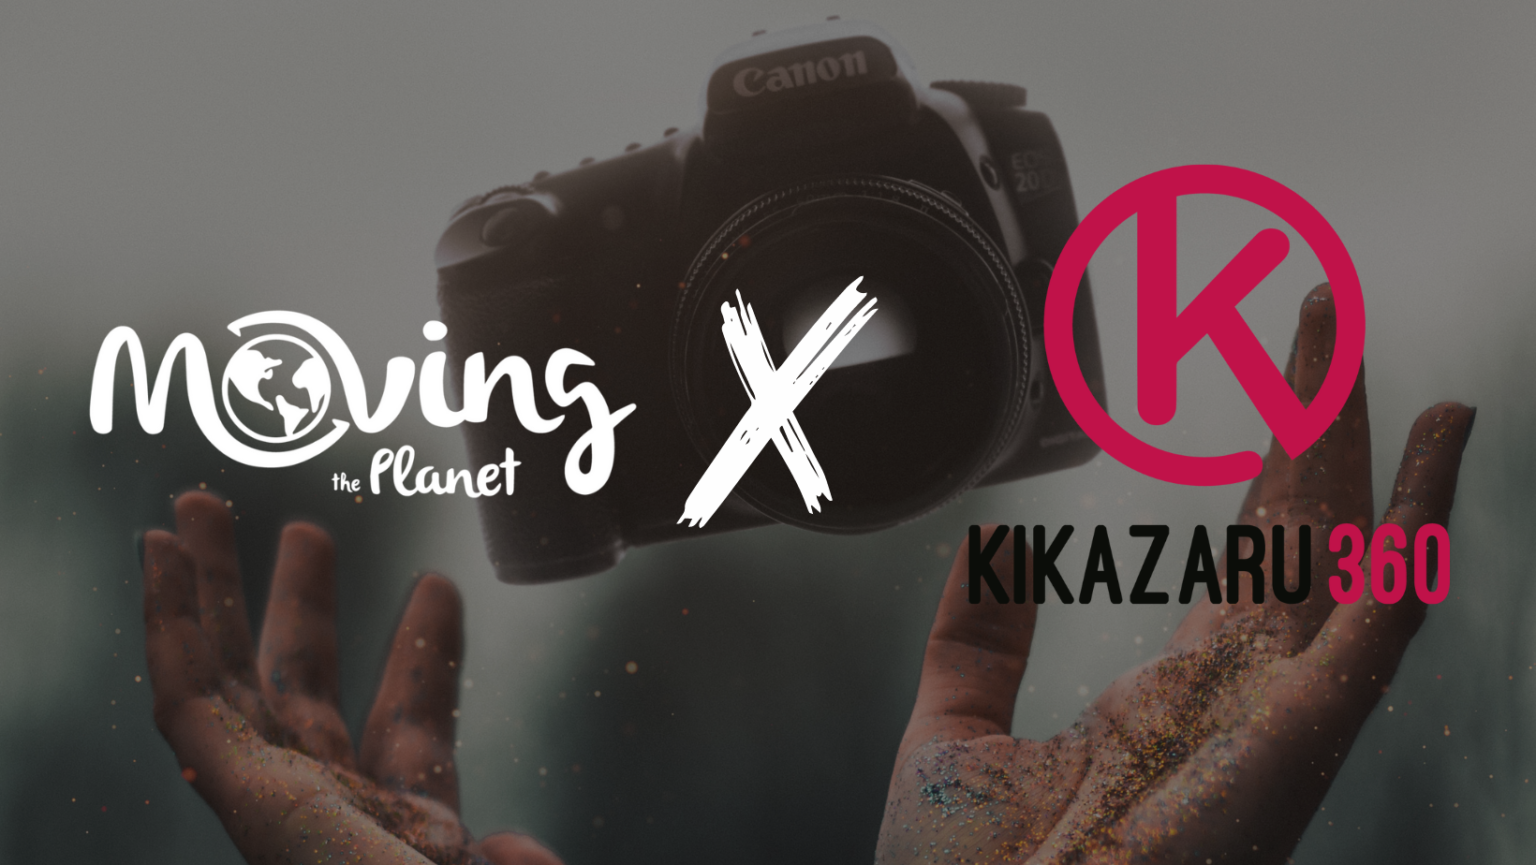 Kikazaru 360 lleva desde sus inicios siendo una Empresa Socialmente Responsable, certificado con el Sello de Moving the Planet.